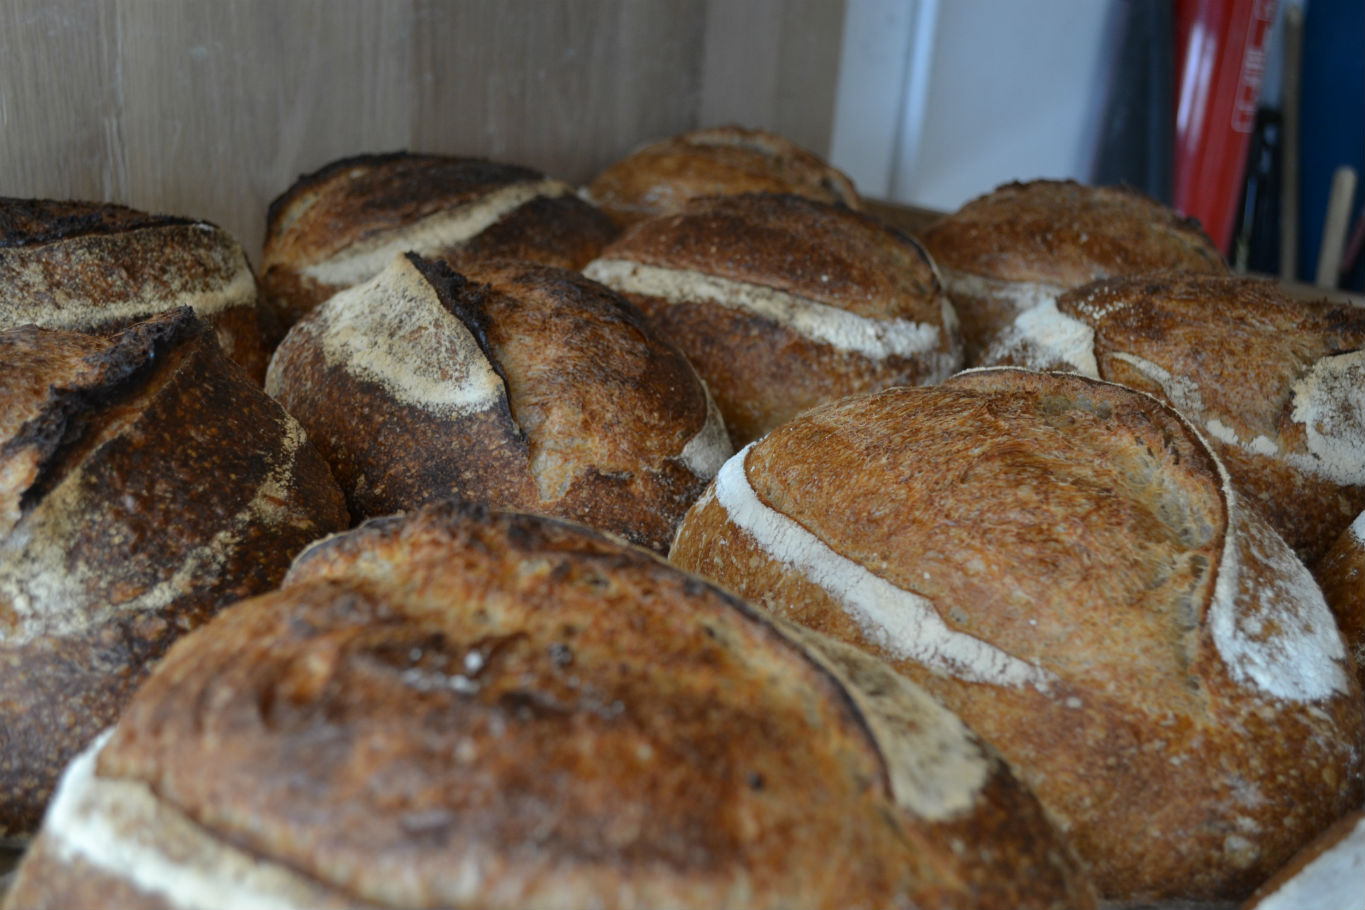 Sourdough at Bread by Bike, Brecknock Road